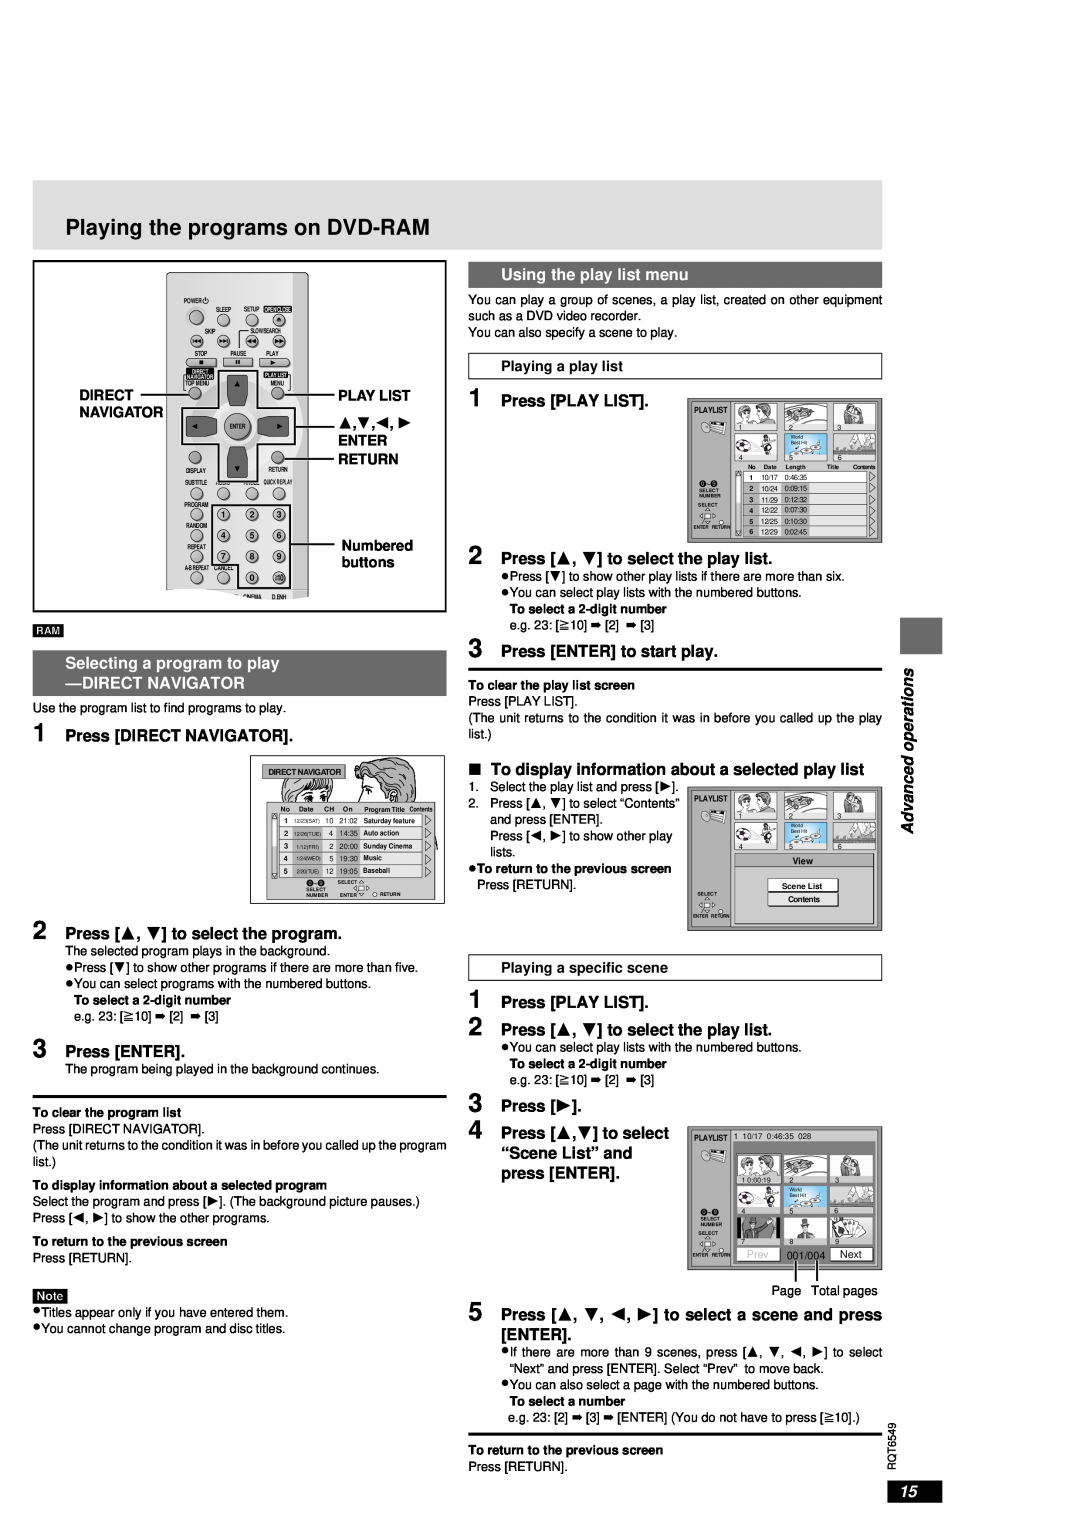 Panasonic DVD-RP82 Playing the programs on DVD-RAM, Using the play list menu, Press PLAY LIST, Press DIRECT NAVIGATOR 